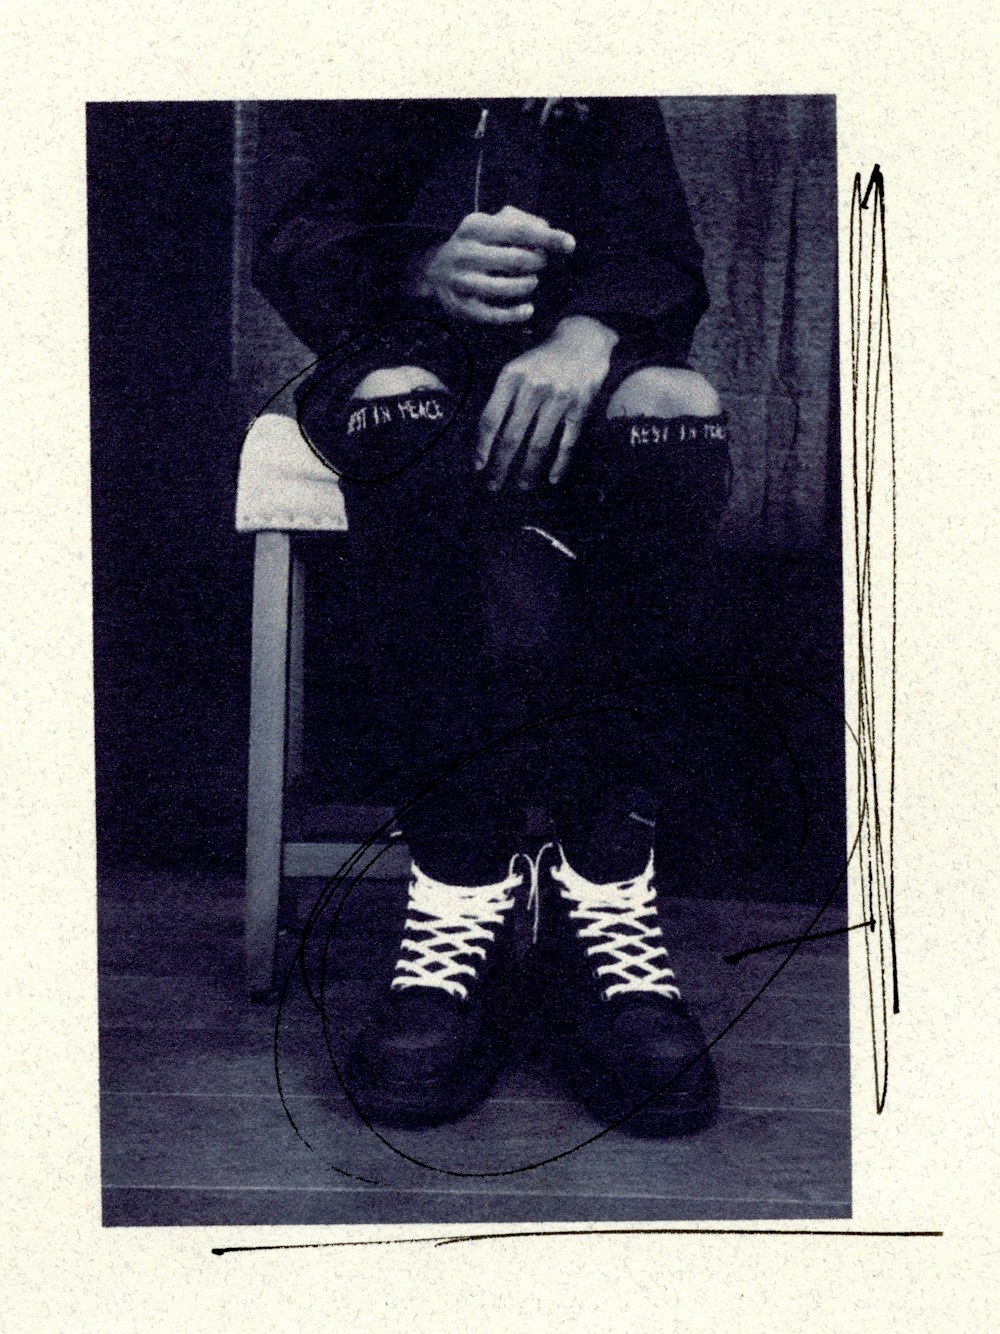 Hombre con chaqueta negra y pantalones a rayas blancas y negras sentado en una silla blanca